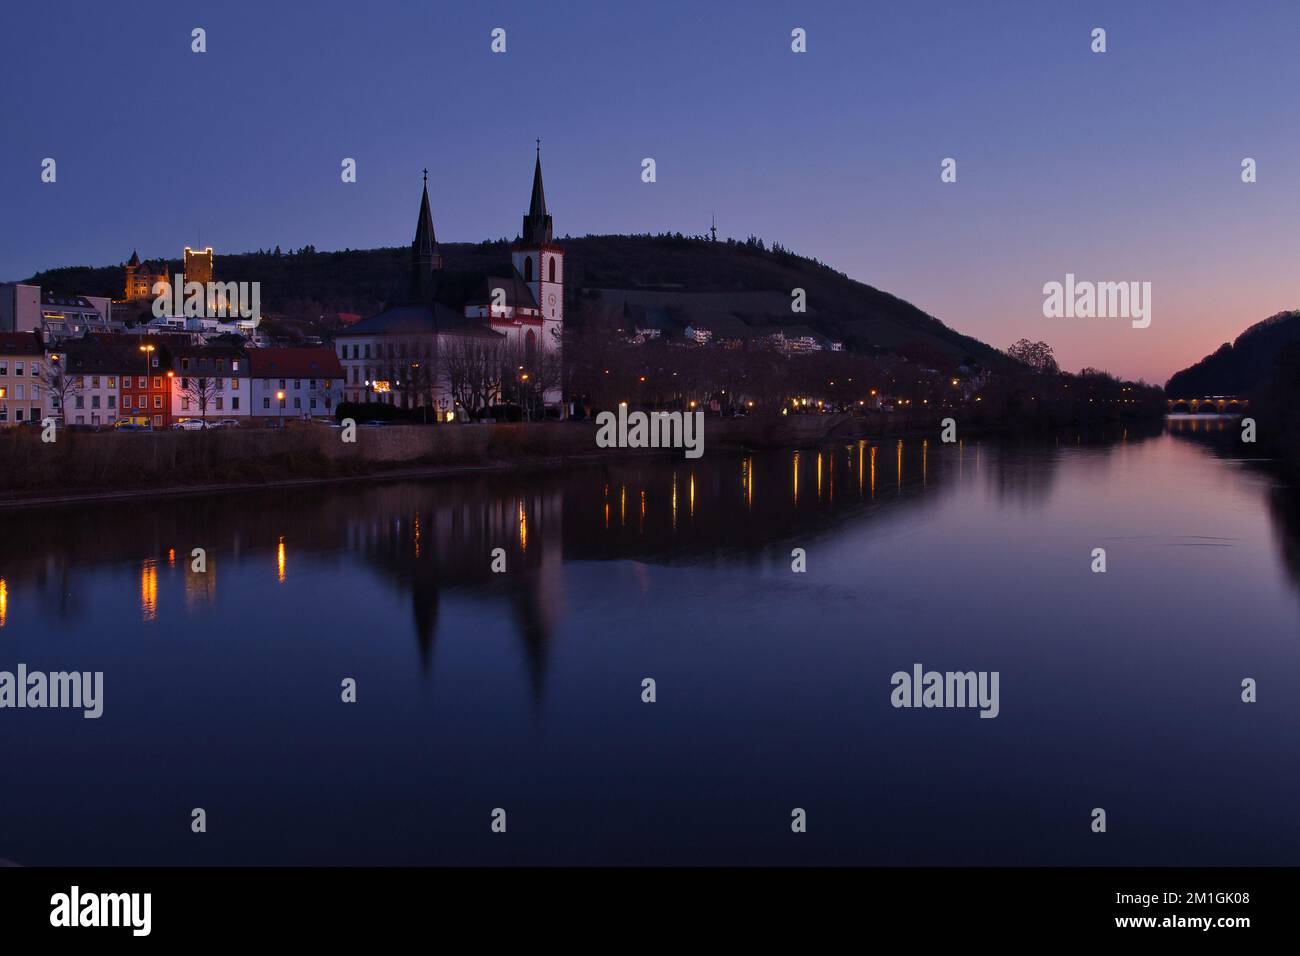 Bingen am Rhein, Allemagne - 10 janvier 2021 : ciel coloré au-dessus du château de Klopp, église et pont avec leurs réflexions dans le Rhin en hiver n Banque D'Images